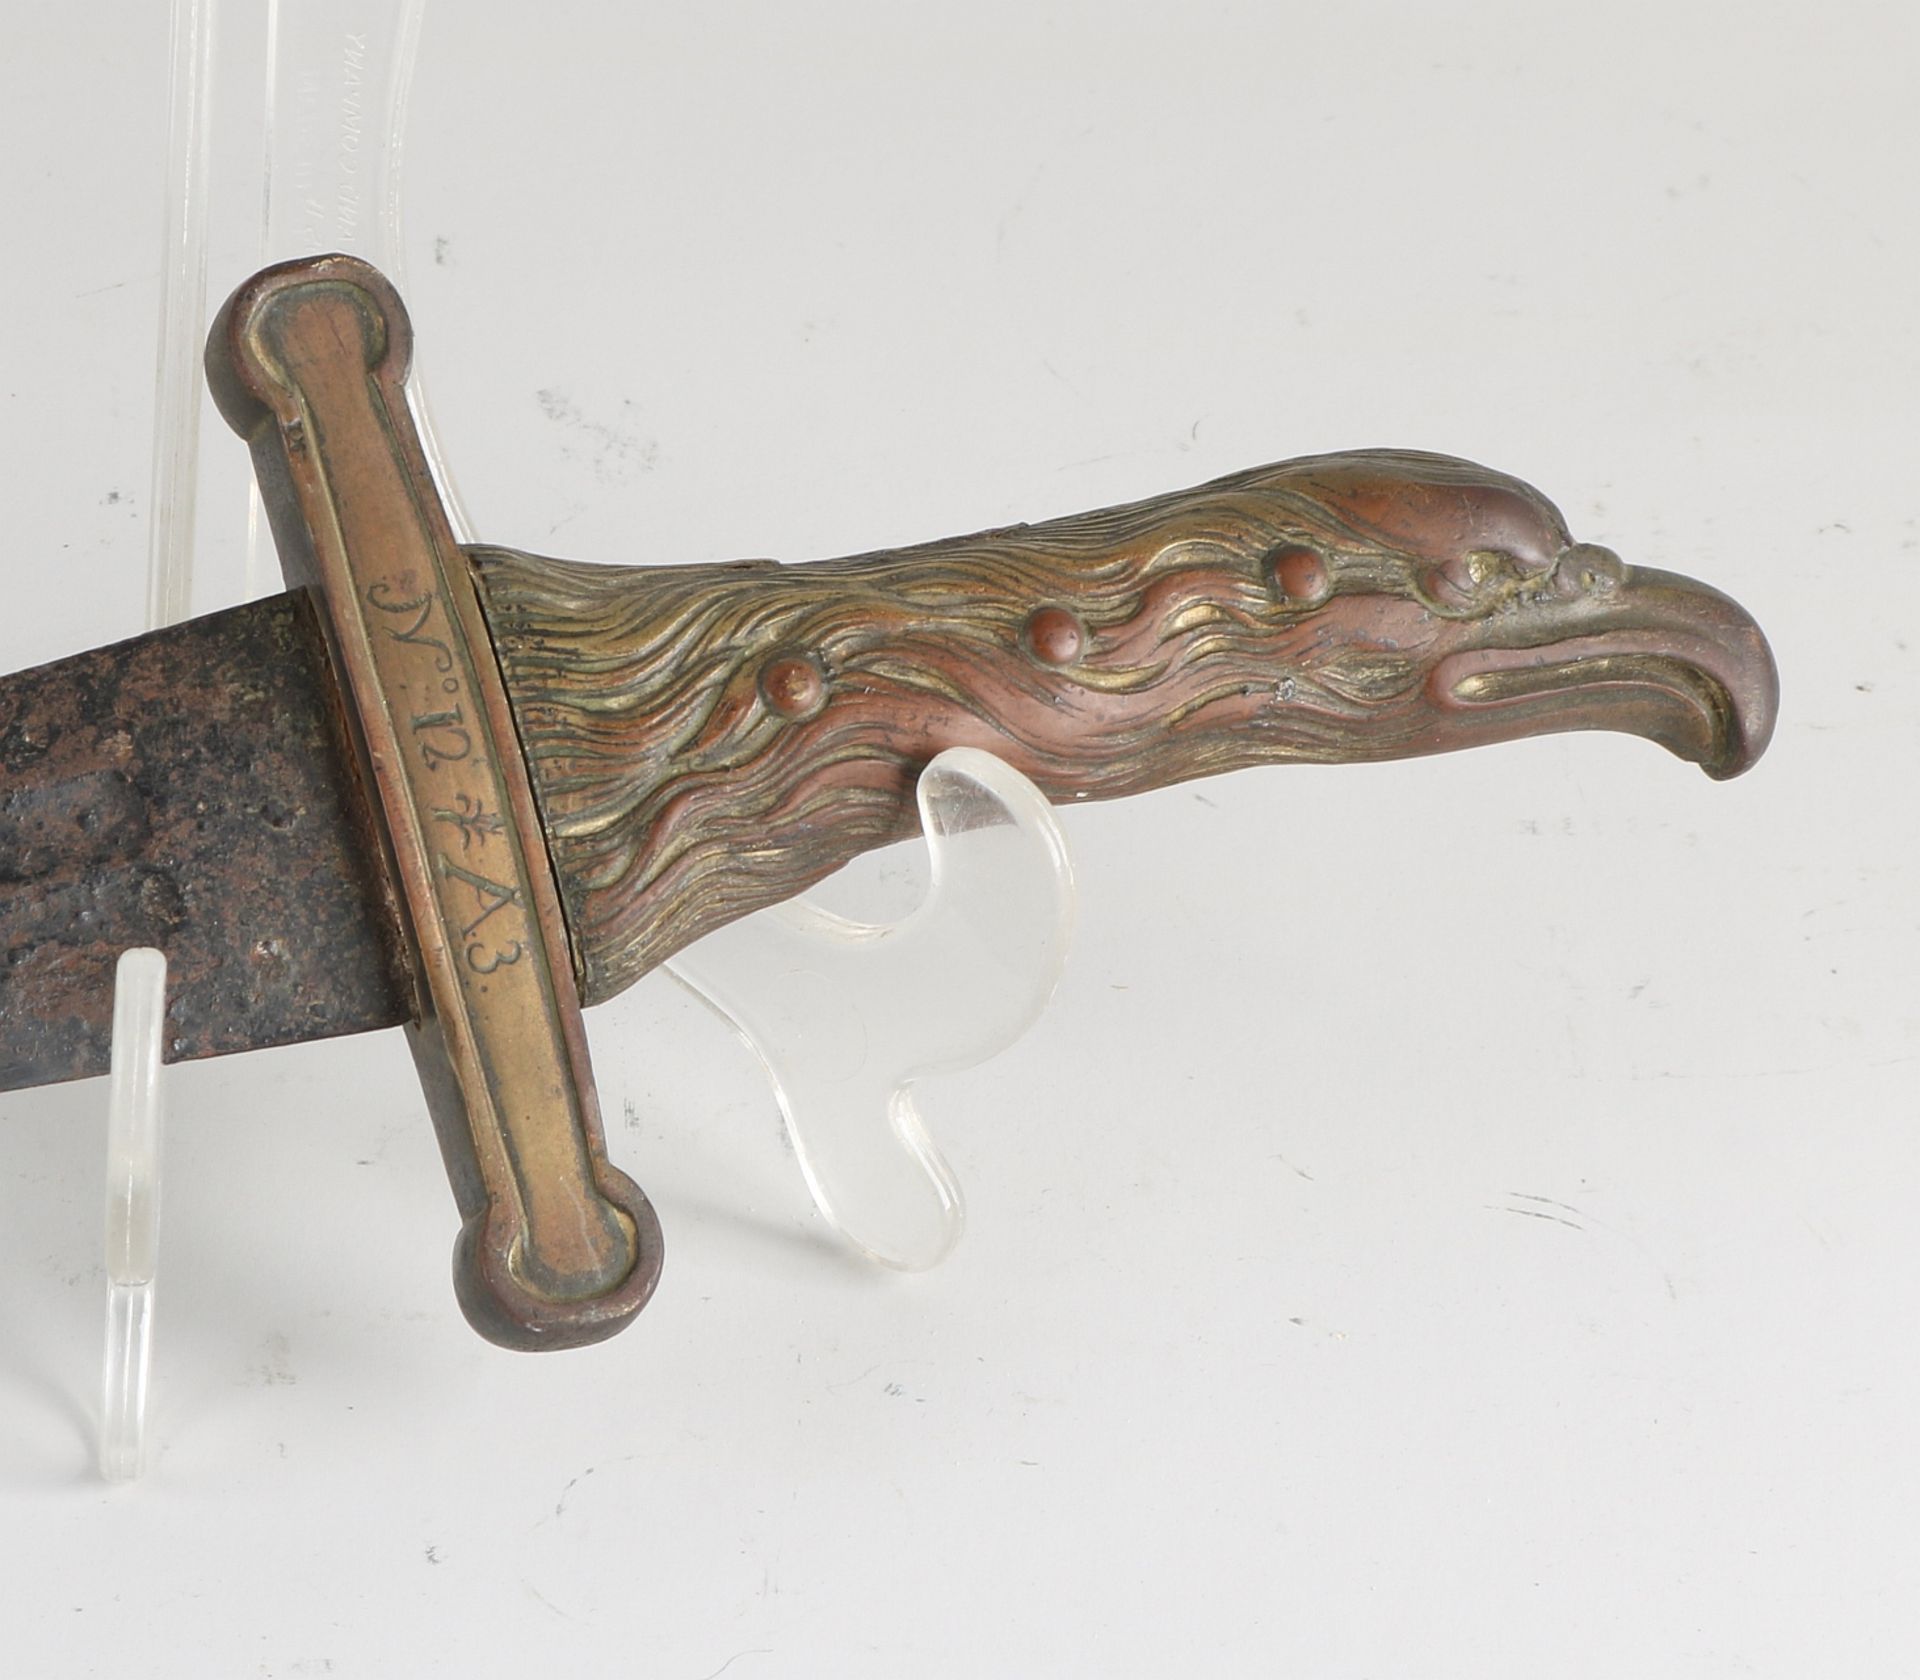 Antique damask short sword - Image 2 of 2